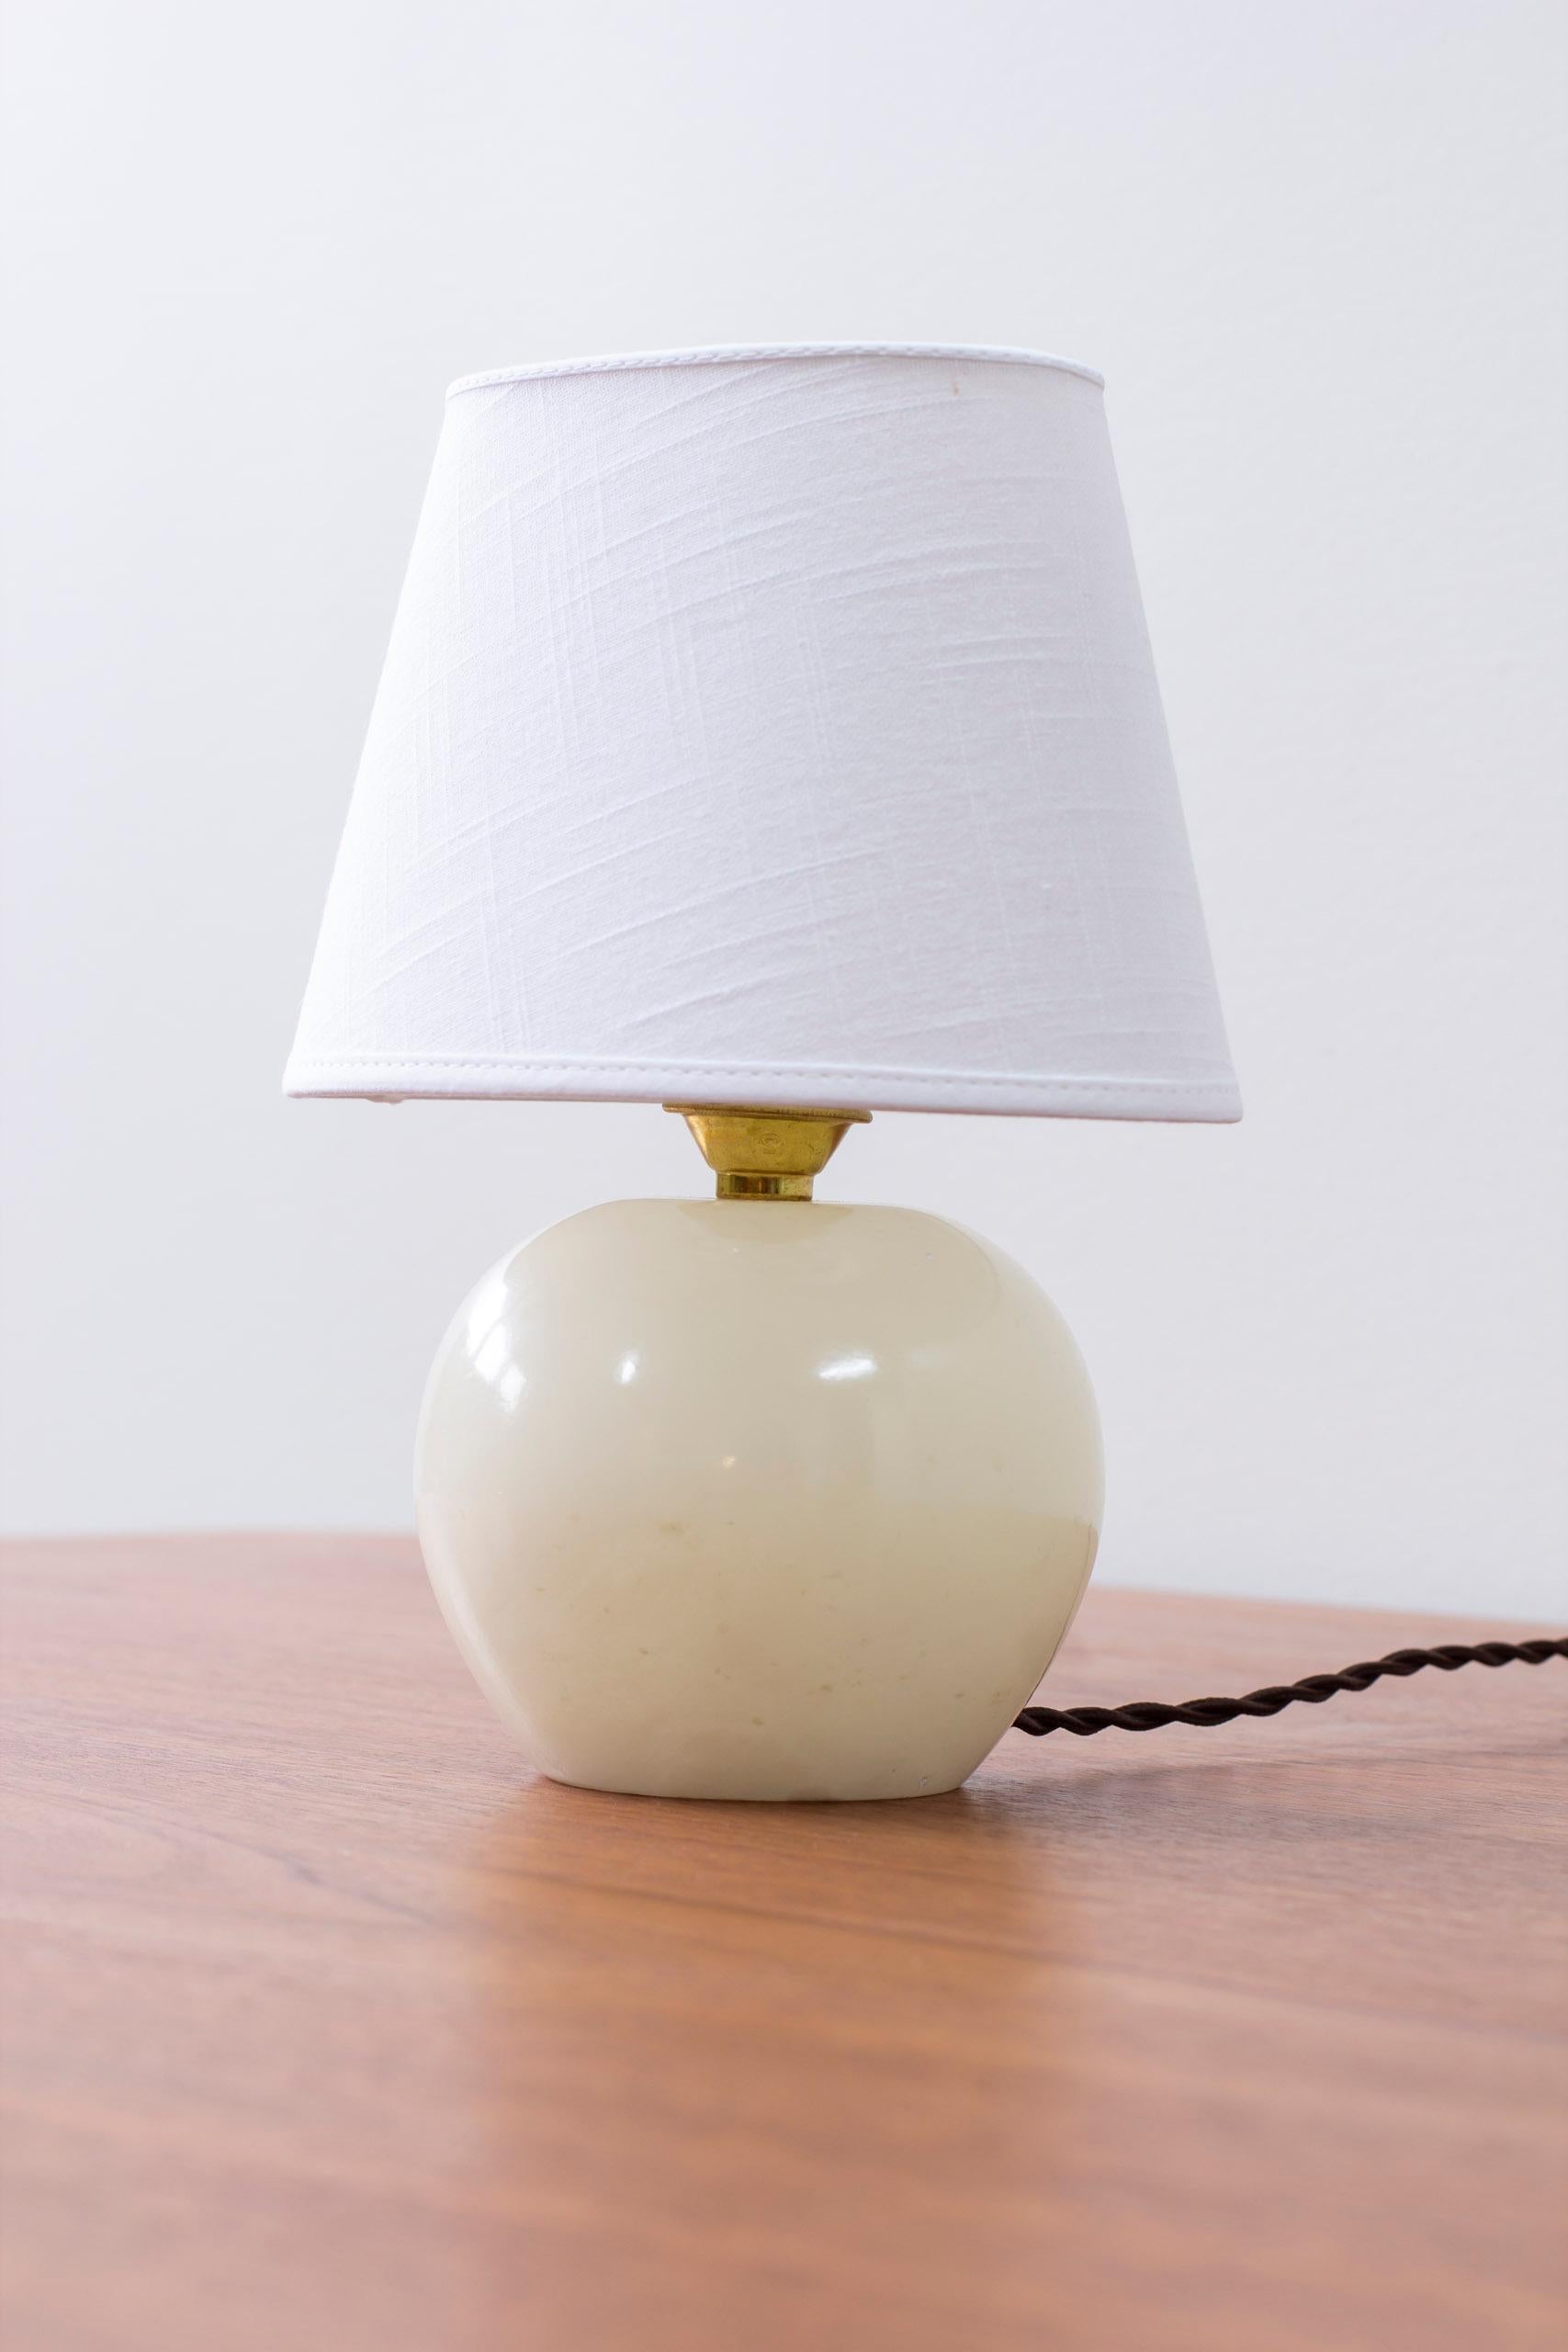 Lampe de table modèle 2575 conçue par Josef Frank. Produit par Svenskt Tenn et cette pièce vers les années 1950-60. La lampe est généralement fabriquée en bois, mais cet exemple est en marbre de Carrare. Nouvel abat-jour en coton. Très bon état